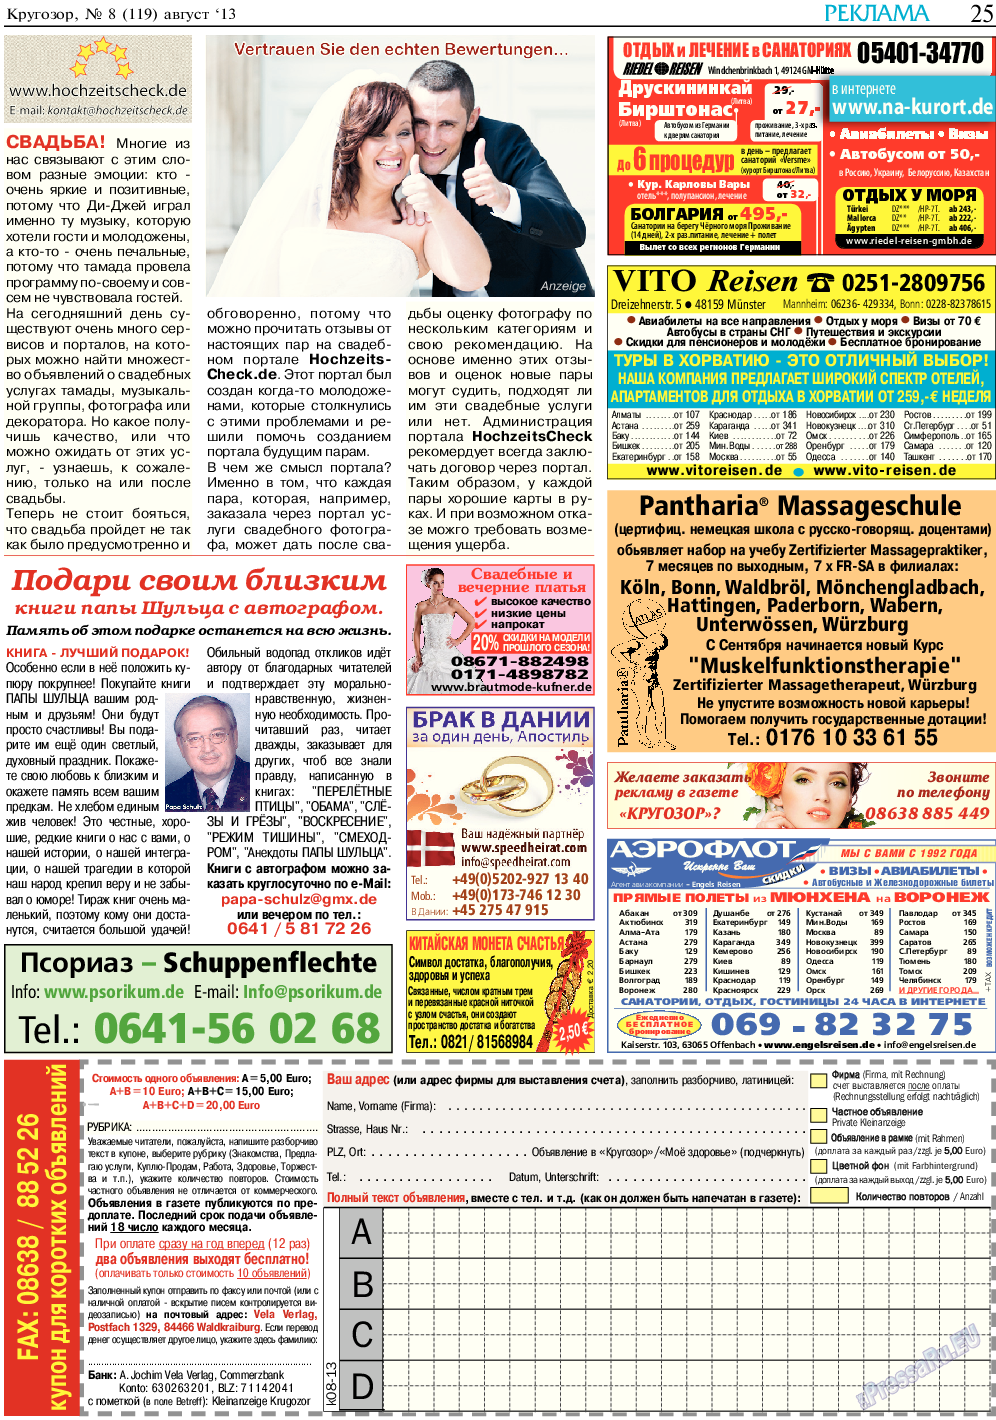 Кругозор, газета. 2013 №8 стр.25